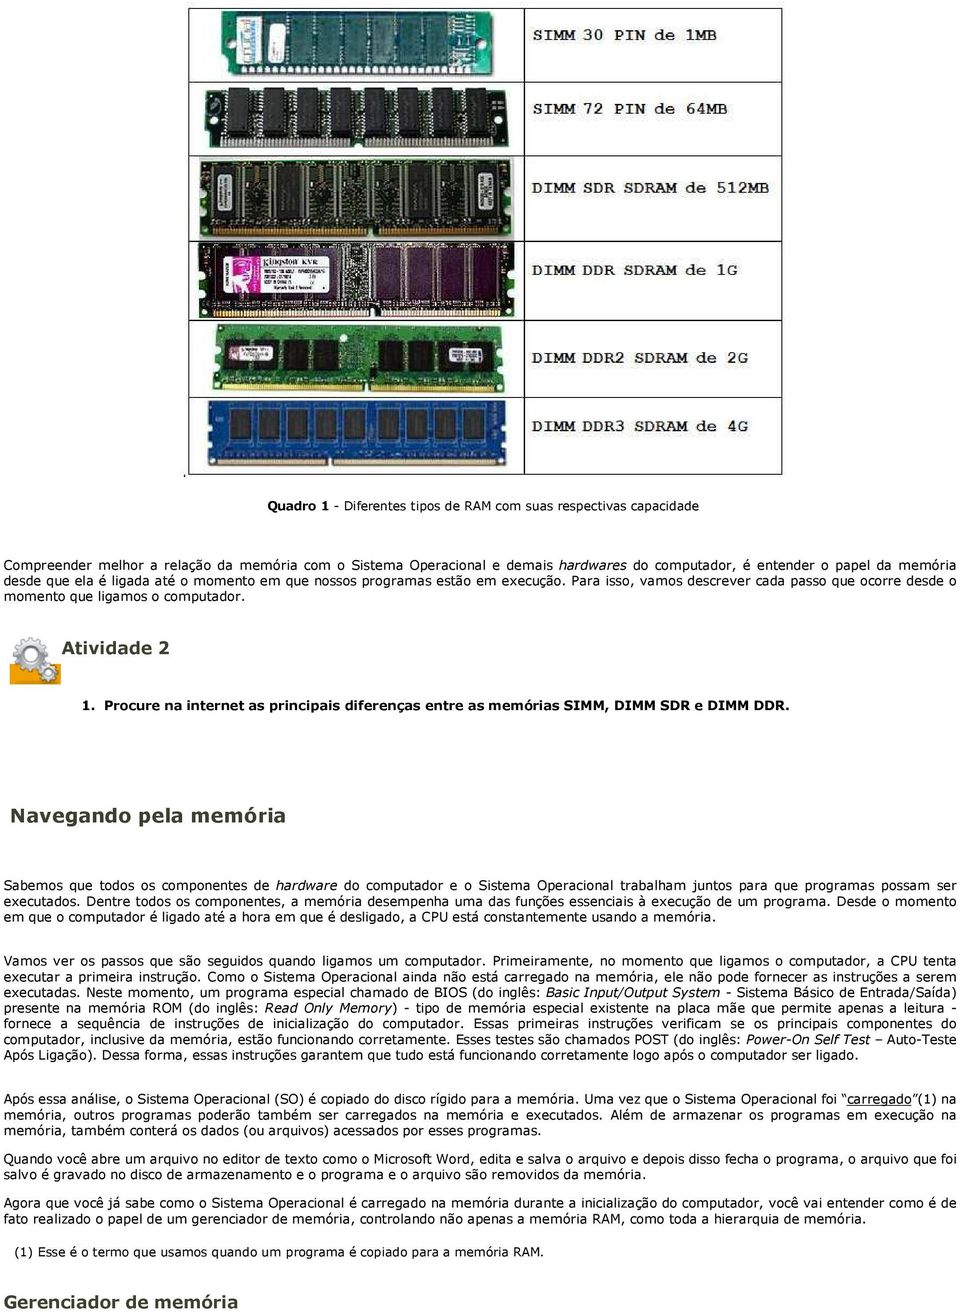 Procure na internet as principais diferenças entre as memórias SIMM, DIMM SDR e DIMM DDR.